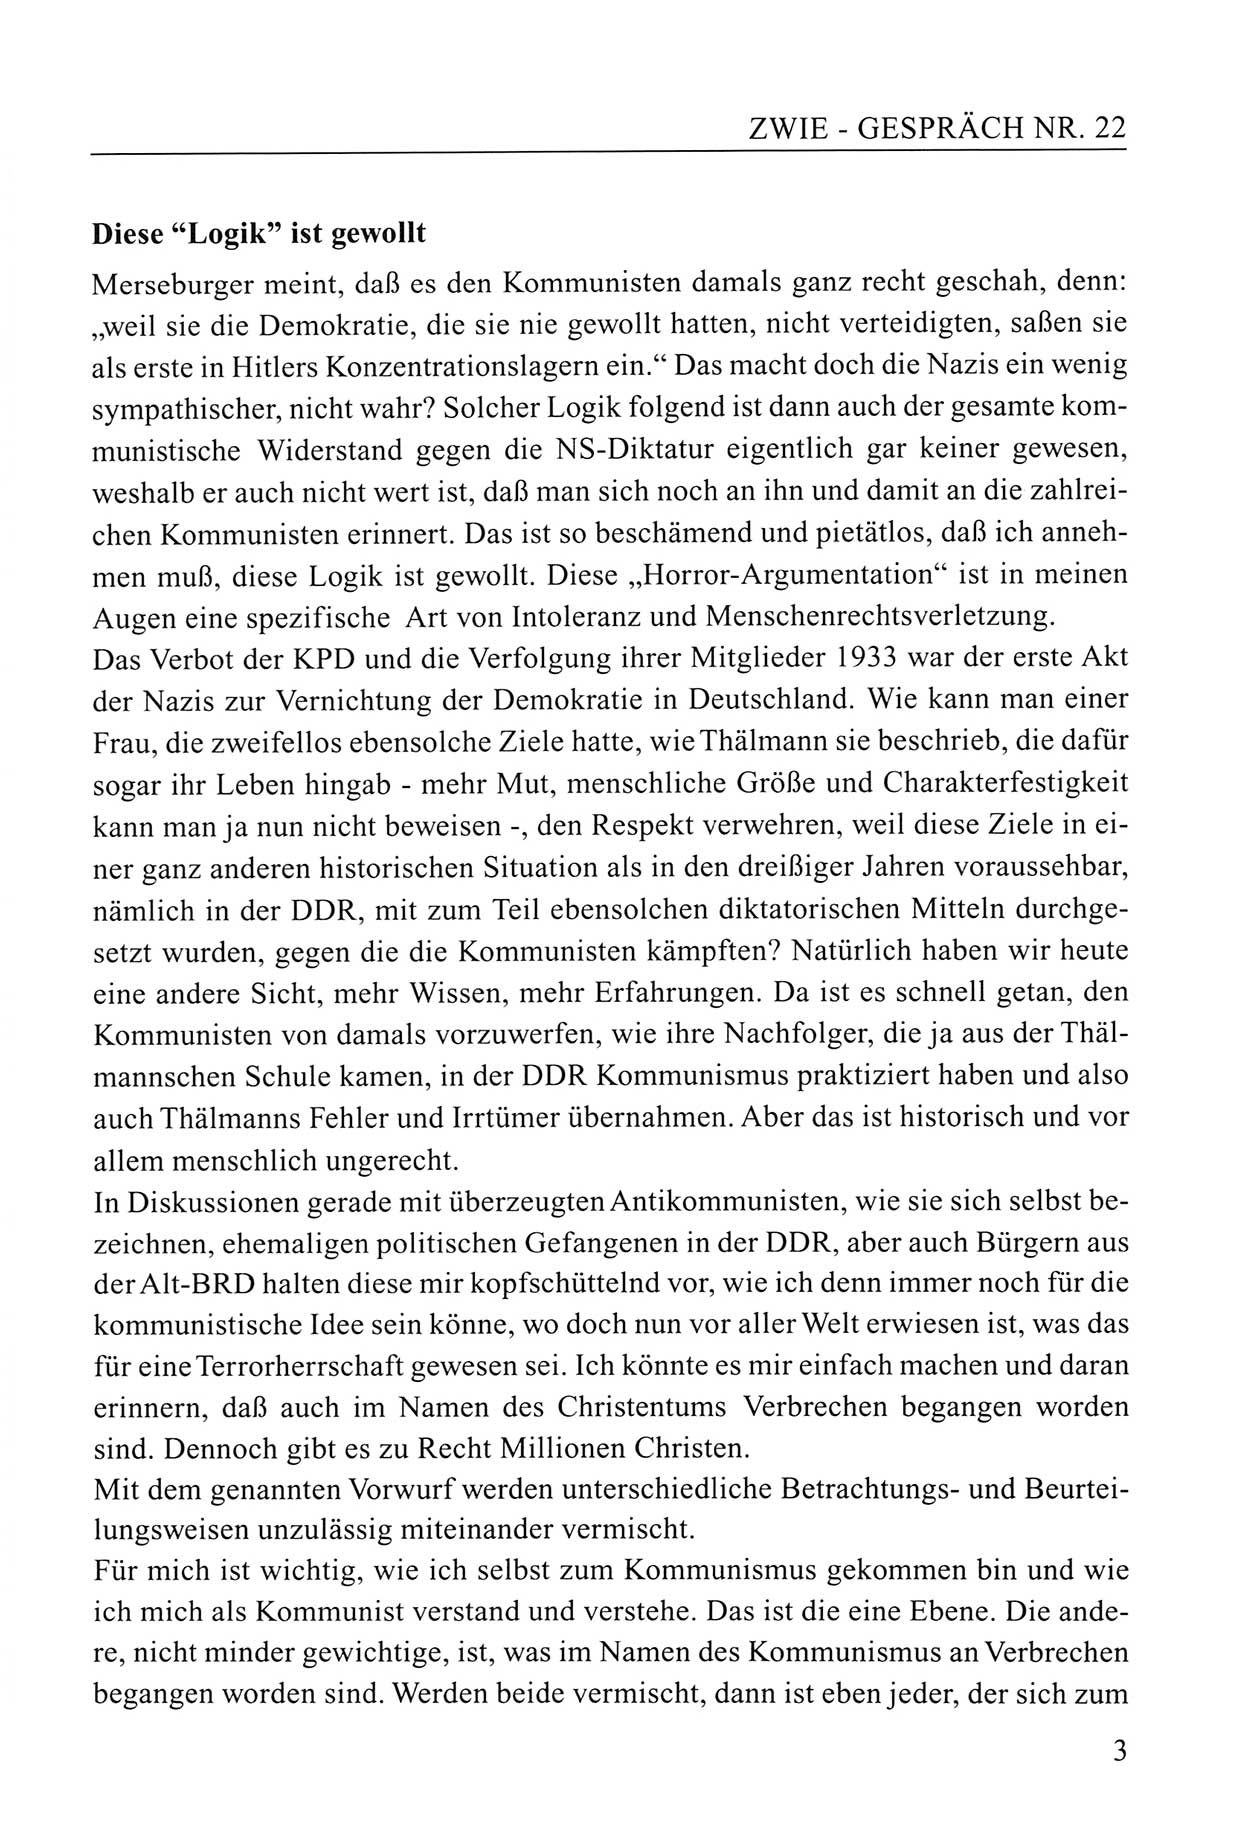 Zwie-Gespräch, Beiträge zum Umgang mit der Staatssicherheits-Vergangenheit [Deutsche Demokratische Republik (DDR)], Ausgabe Nr. 22, Berlin 1994, Seite 3 (Zwie-Gespr. Ausg. 22 1994, S. 3)